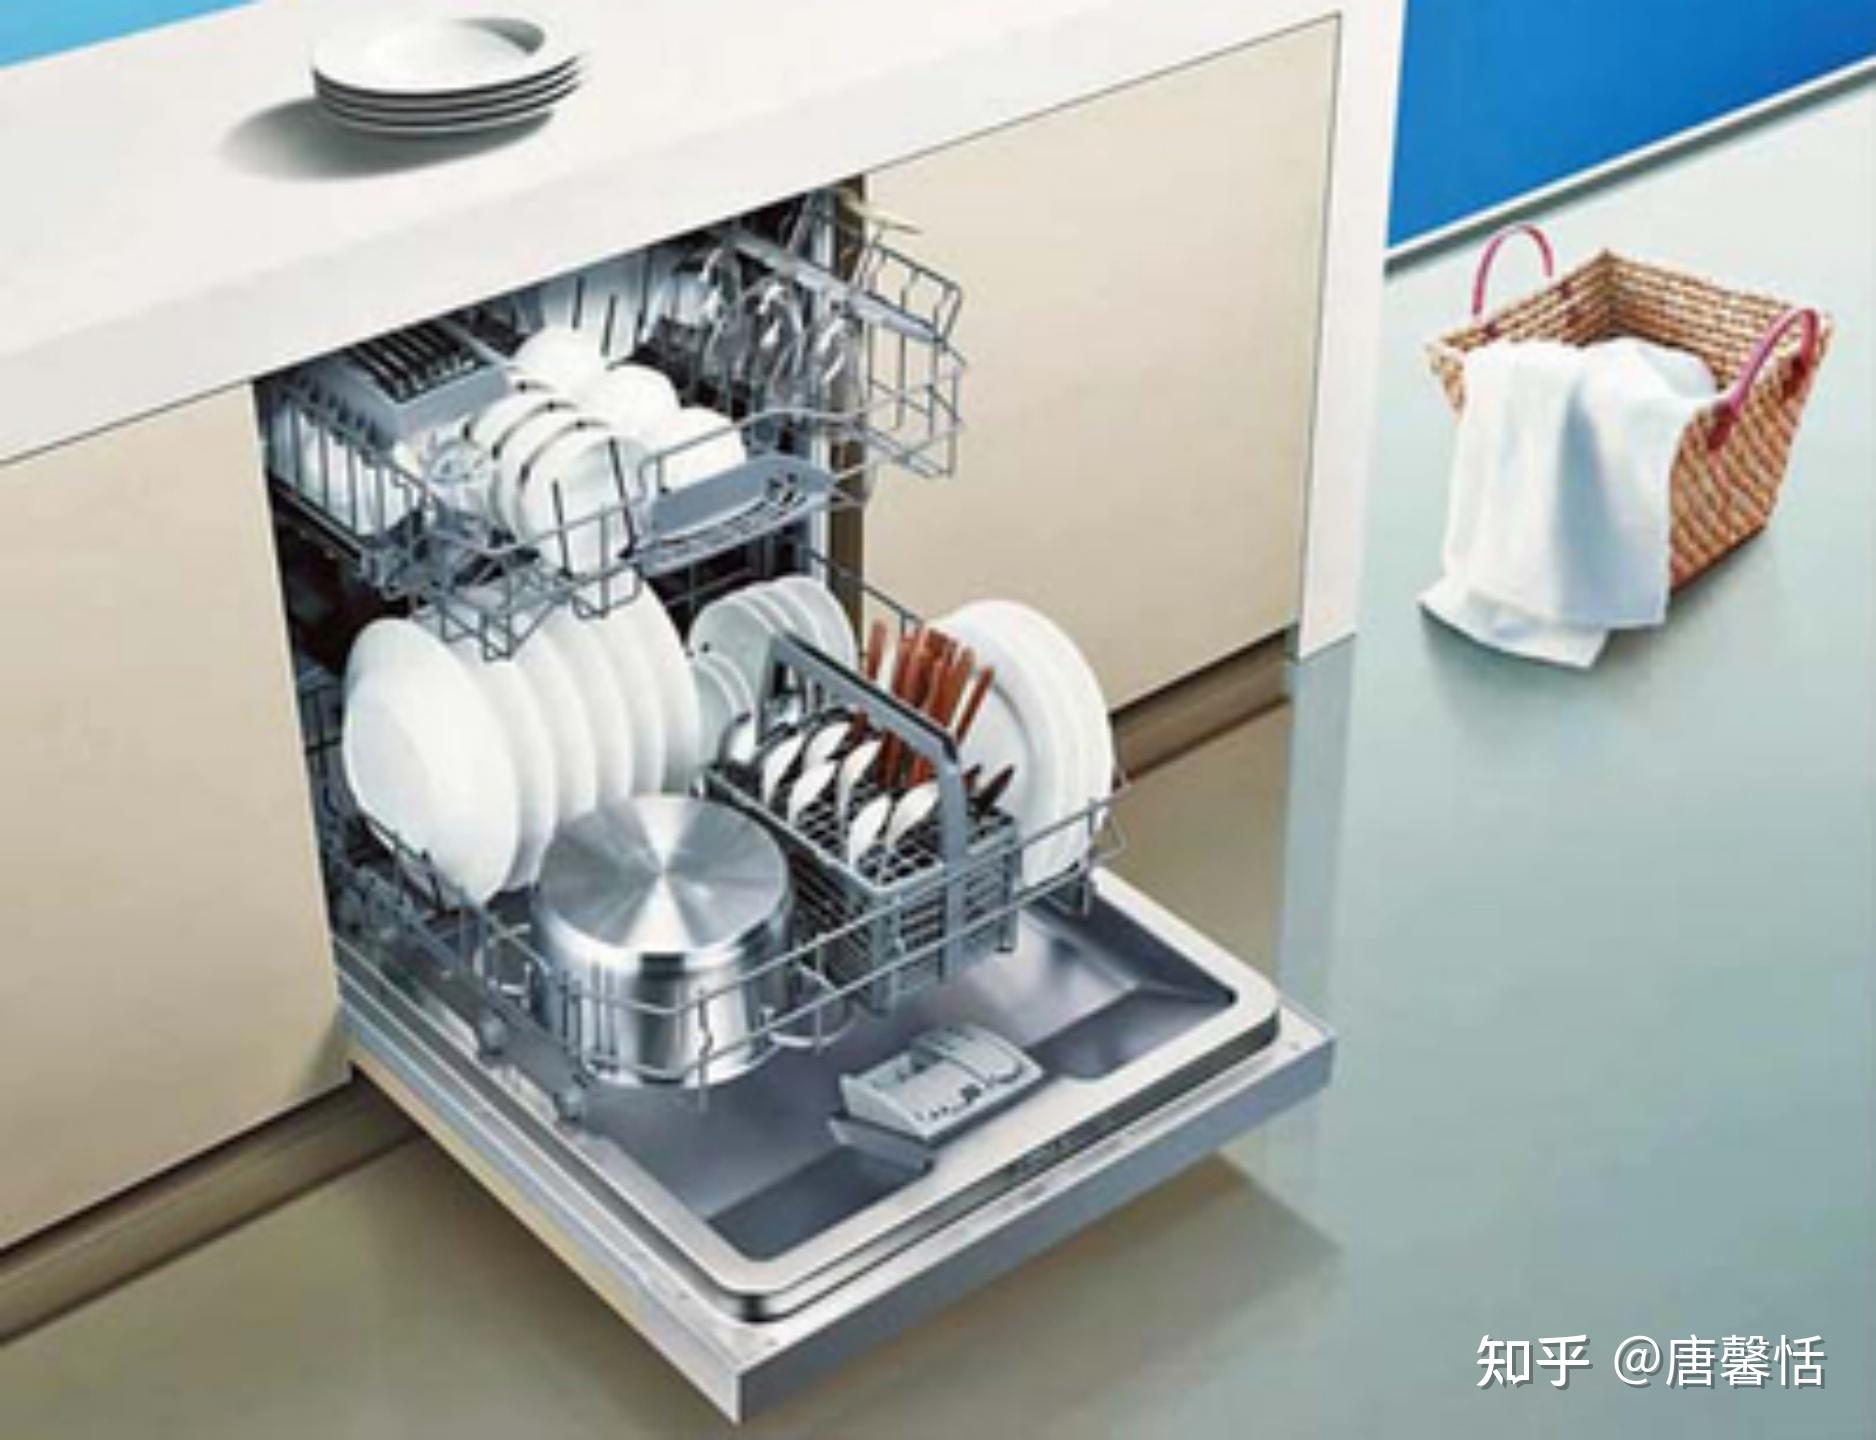 用心优化，或是最适合中国厨房的洗碗机、海尔晶彩系列独&嵌式13套洗碗机 评测_智能界—智能科技聚合推荐平台—引领未来智能生活